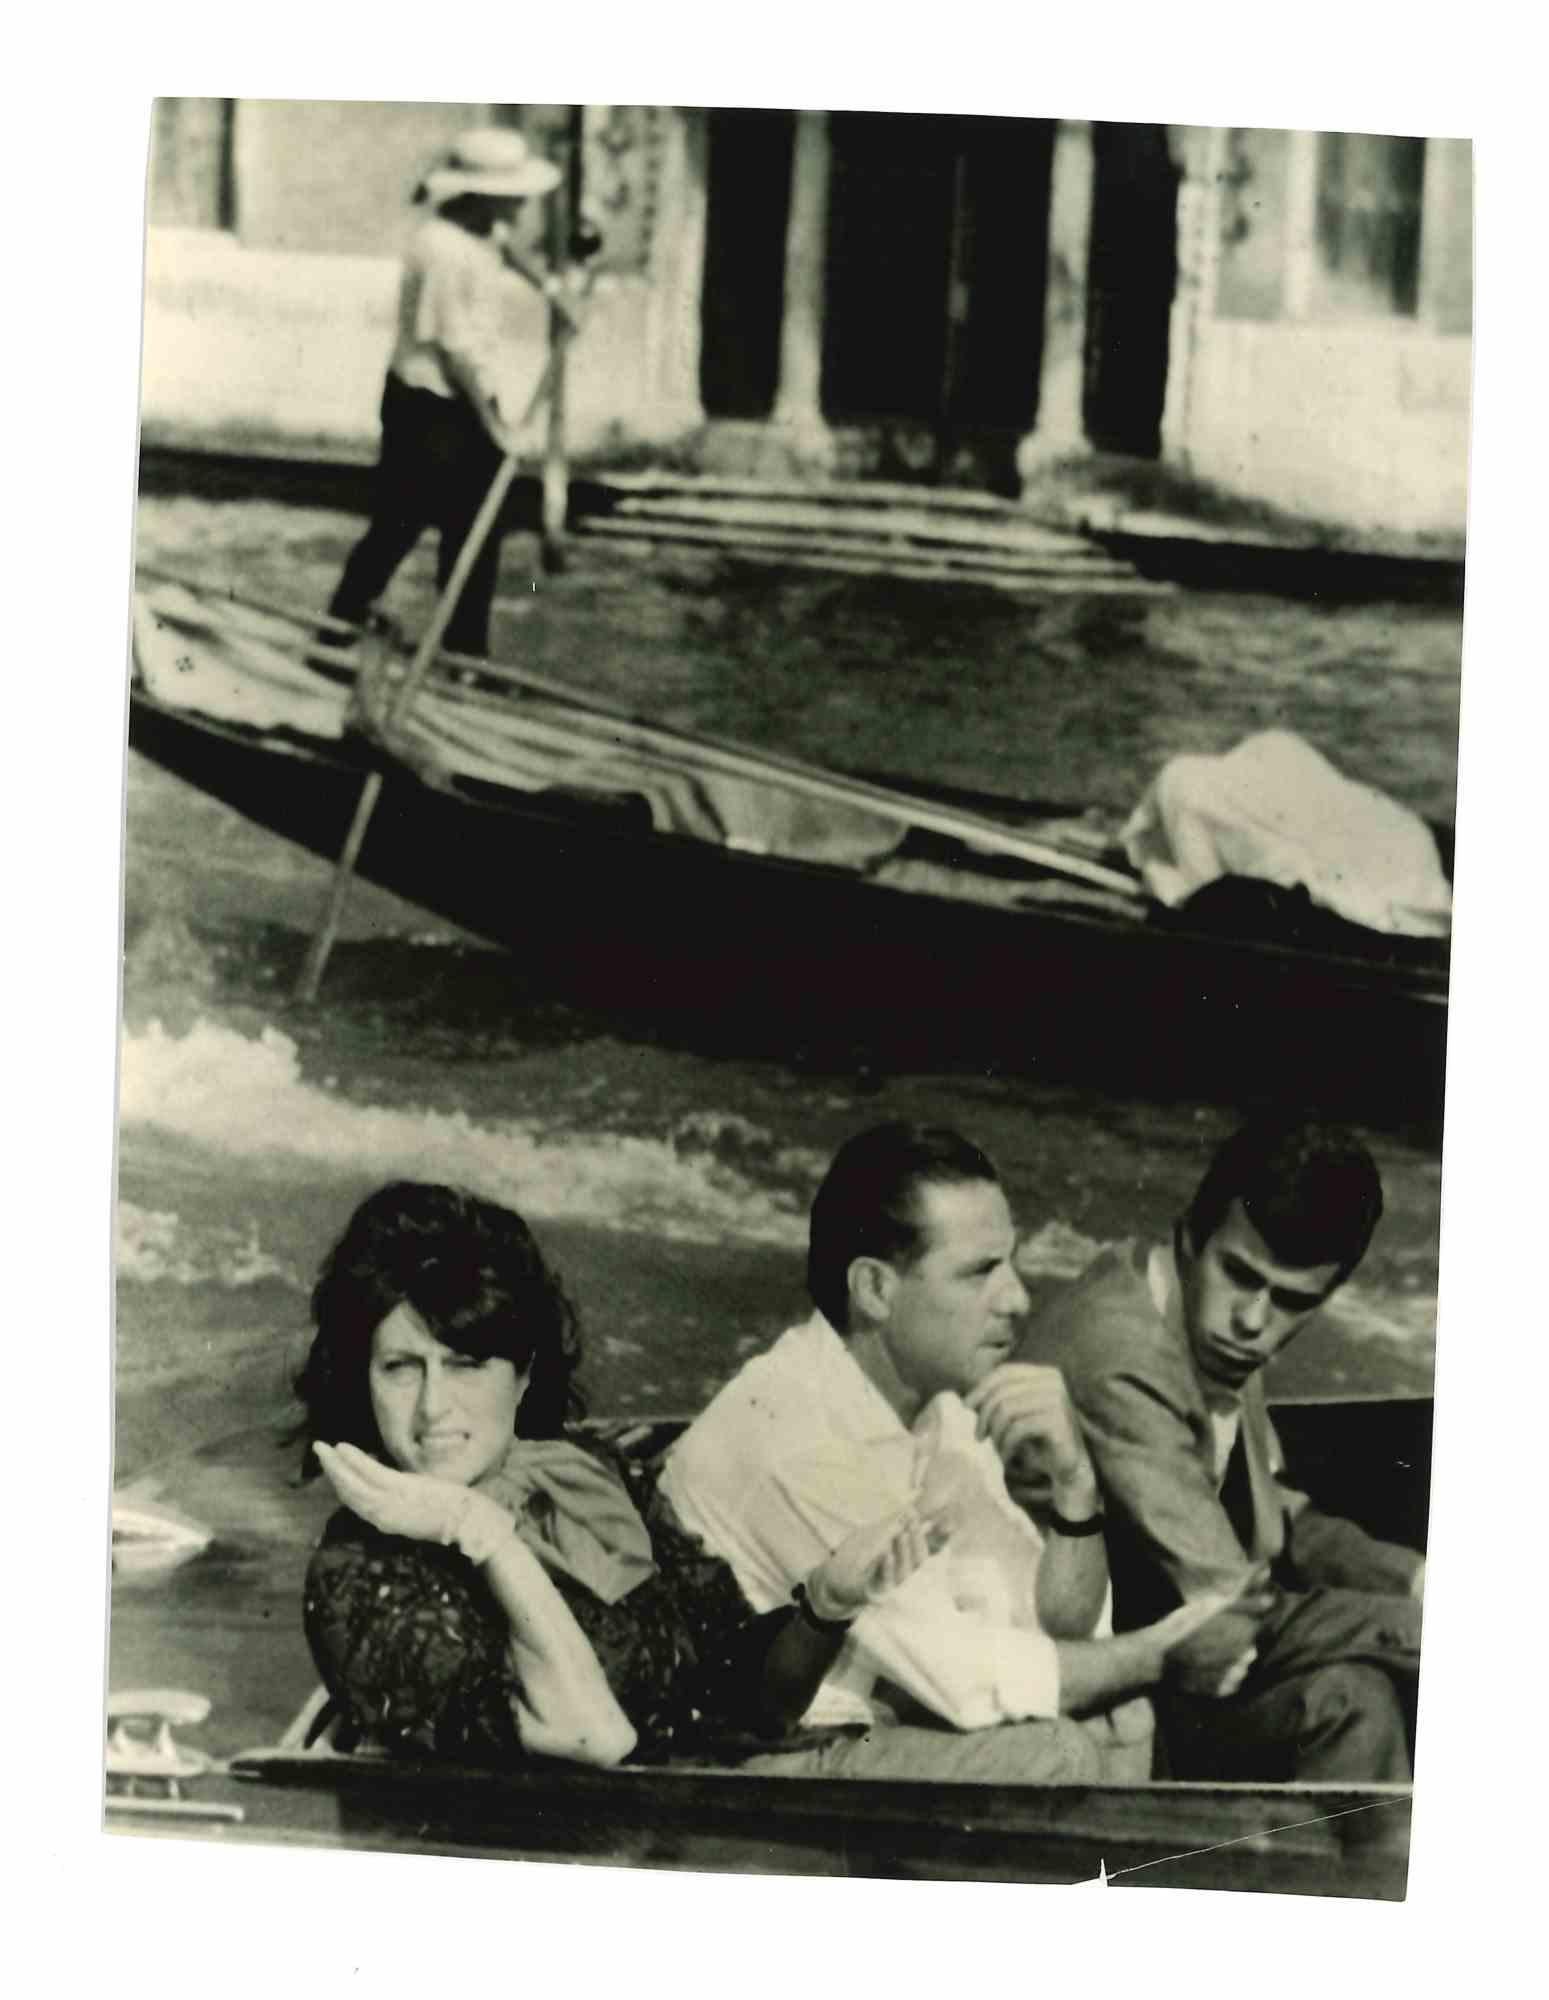 Unknown Black and White Photograph - Anna Magnani and Renato Castellani - Vintage Photo - 1950s